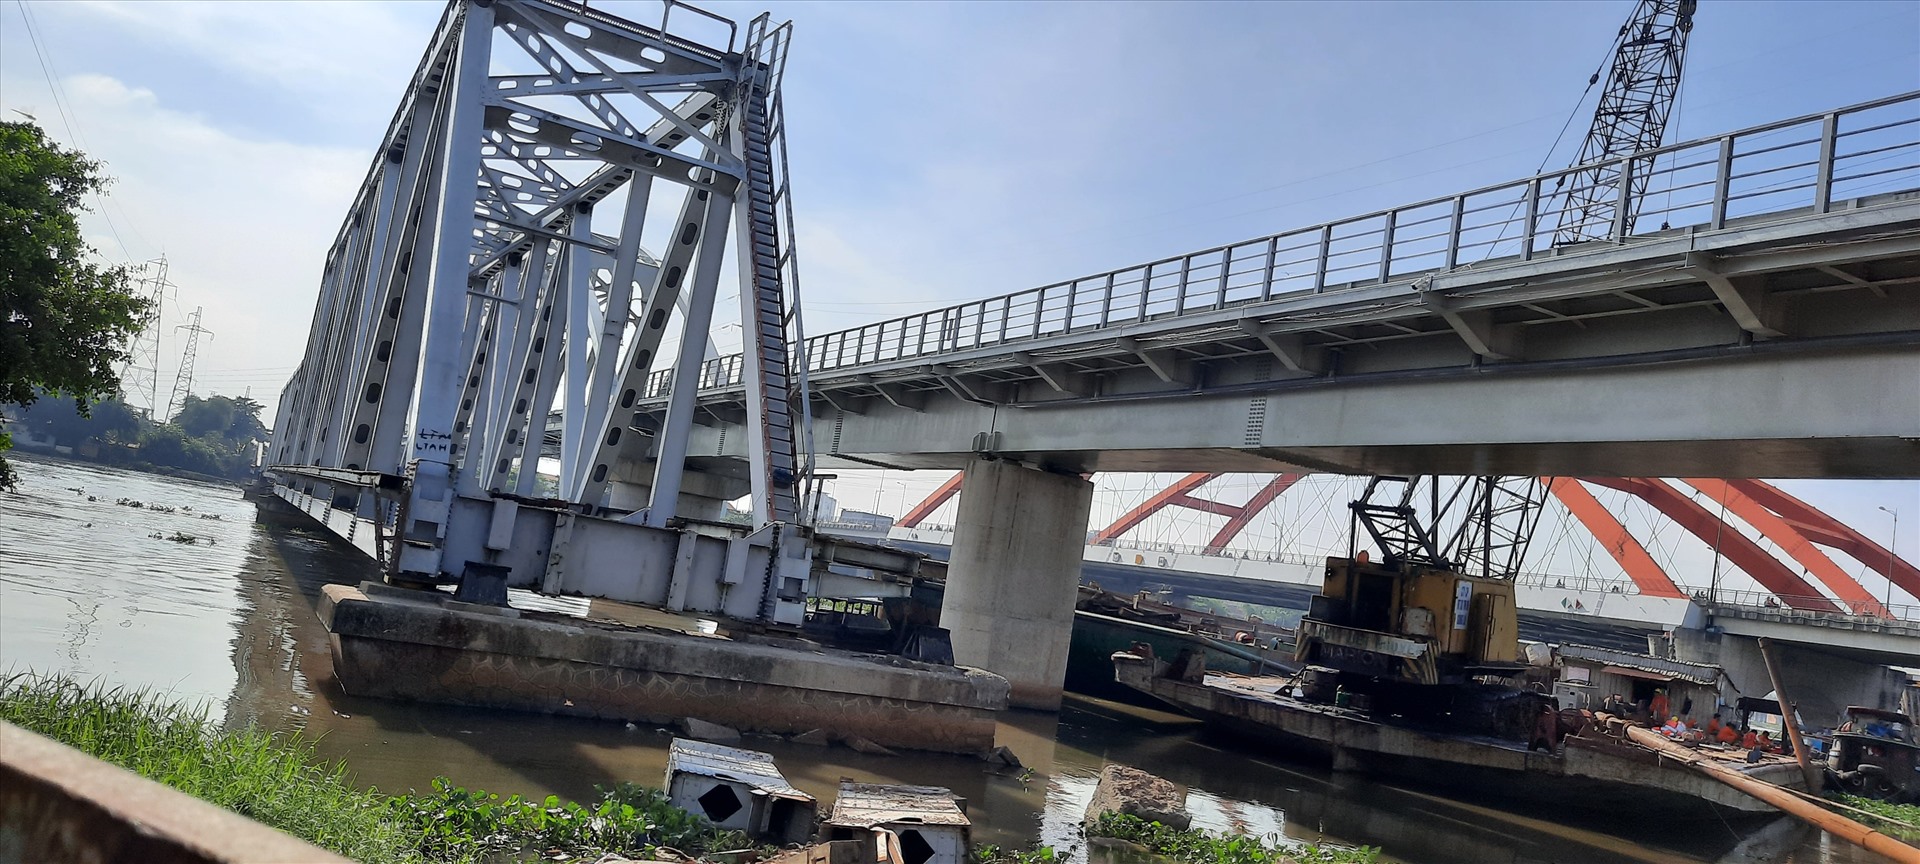 Phần cầu còn lại phía bên quận Bình Thành được giữ lại để bảo tồn. Ảnh Minh Khang